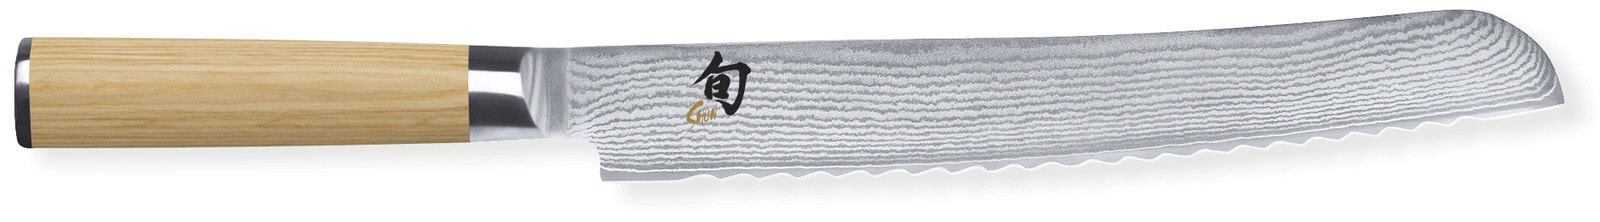 Нож для хлеба универсальный Кai Shun Classic White DM704W 23 см